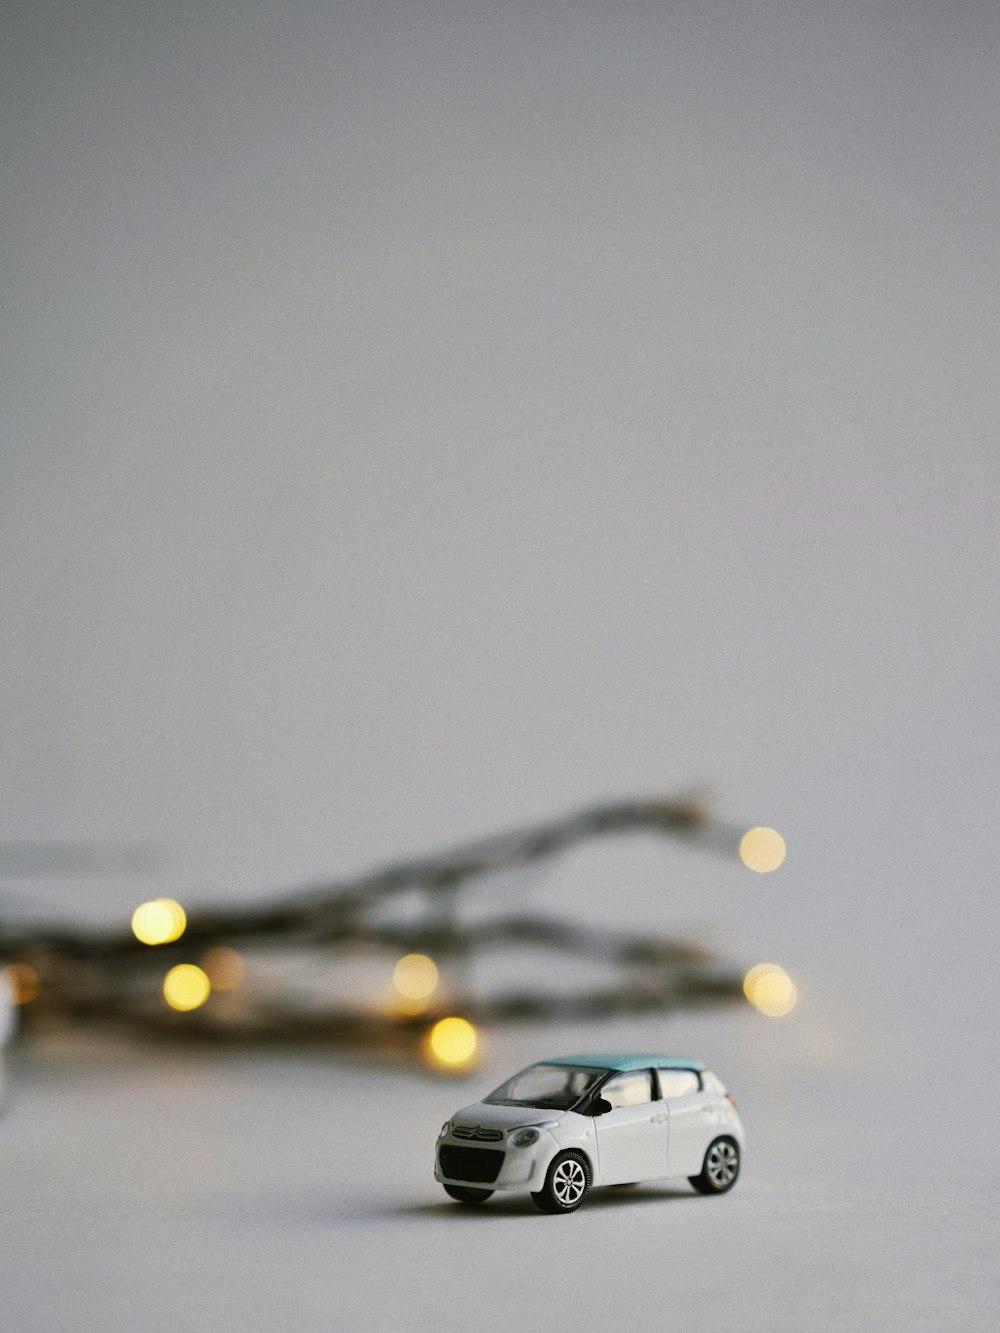 miniatura de coche blanco en fotografía de enfoque selectivo